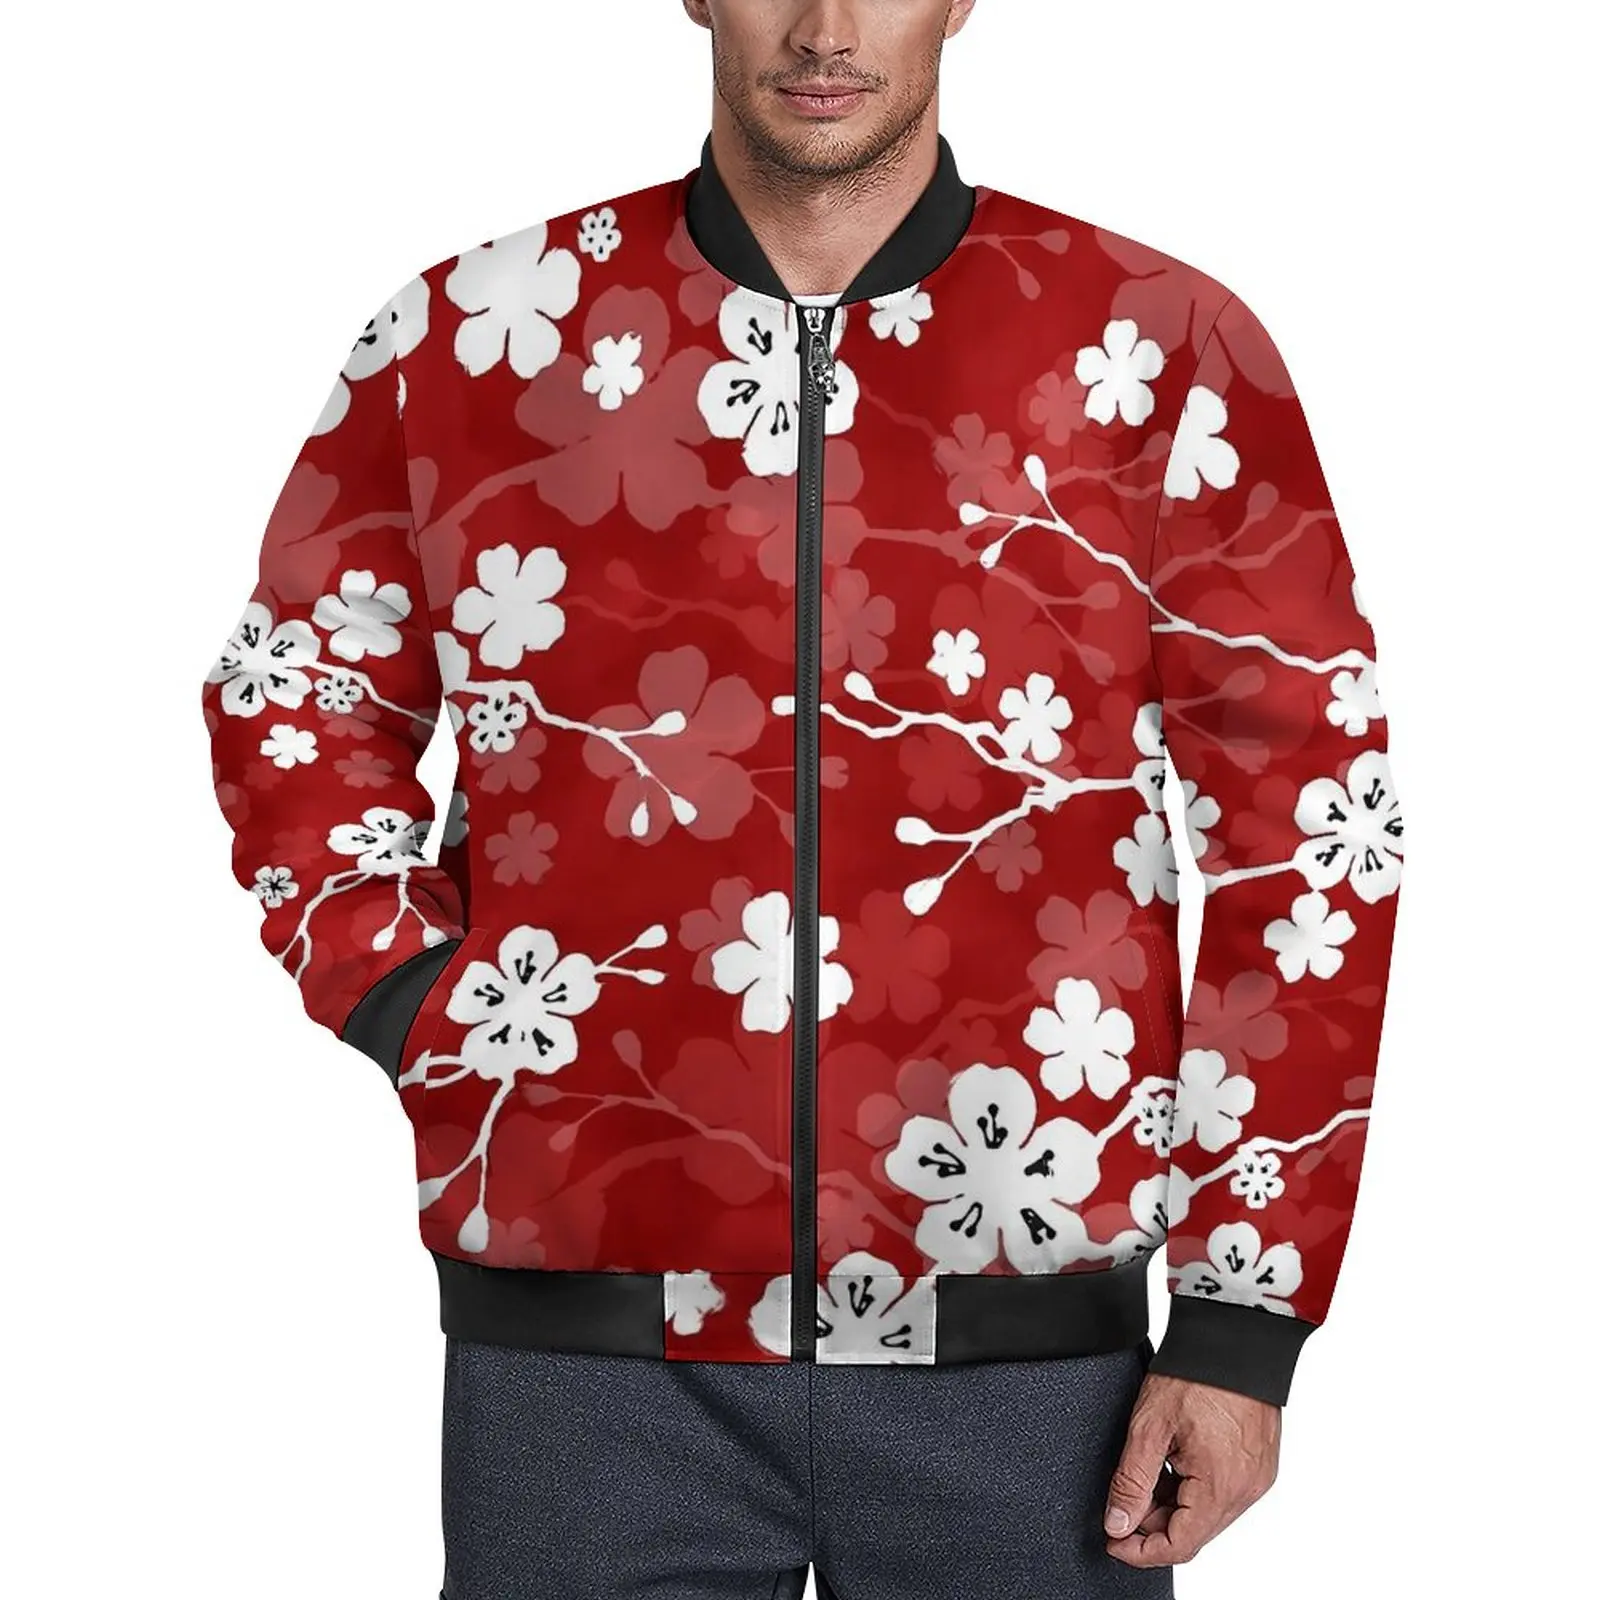 

Куртка мужская демисезонная с цветочным принтом, Повседневная ветровка свободного покроя на молнии, с принтом вишневого цветка, большие размеры, красный и белый